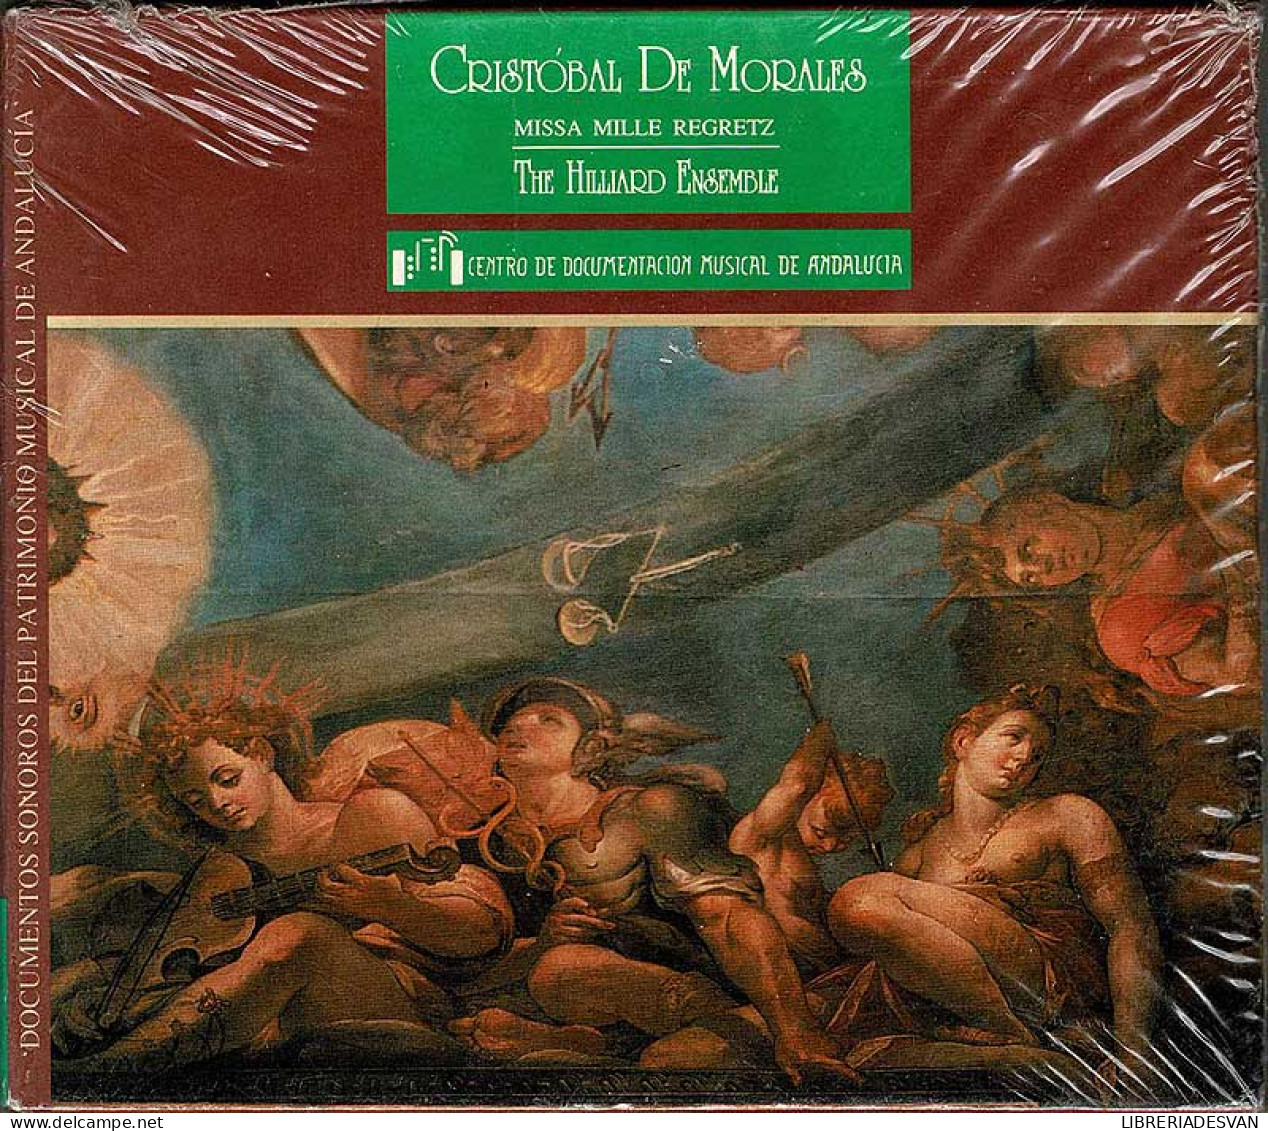 Cristóbal De Morales, The Hilliard Ensemble - Missa Mille Regretz. CD - Classical